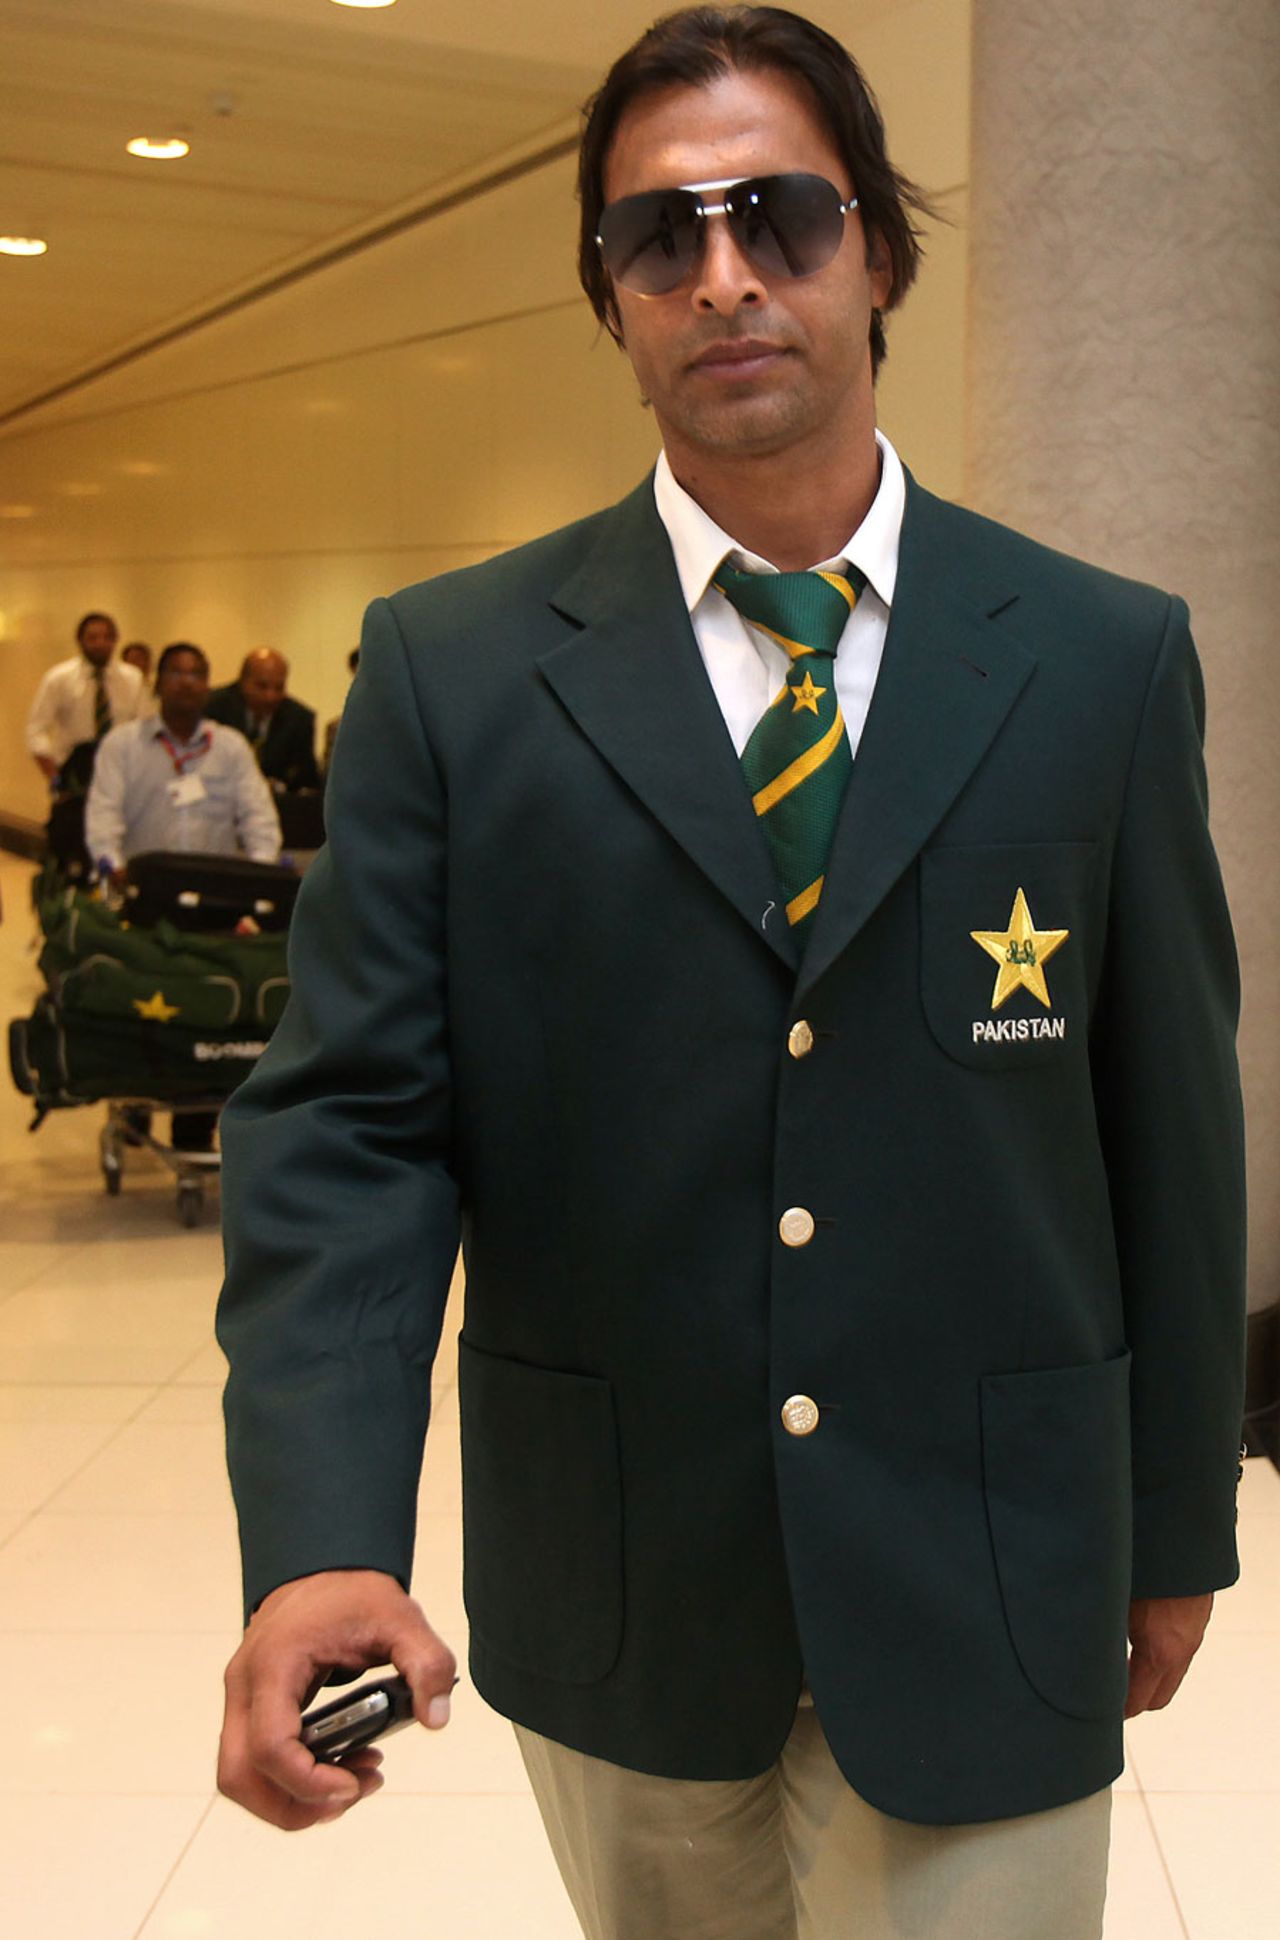 Shoaib Akhtar at Abu Dhabi airport, October 23, 2010